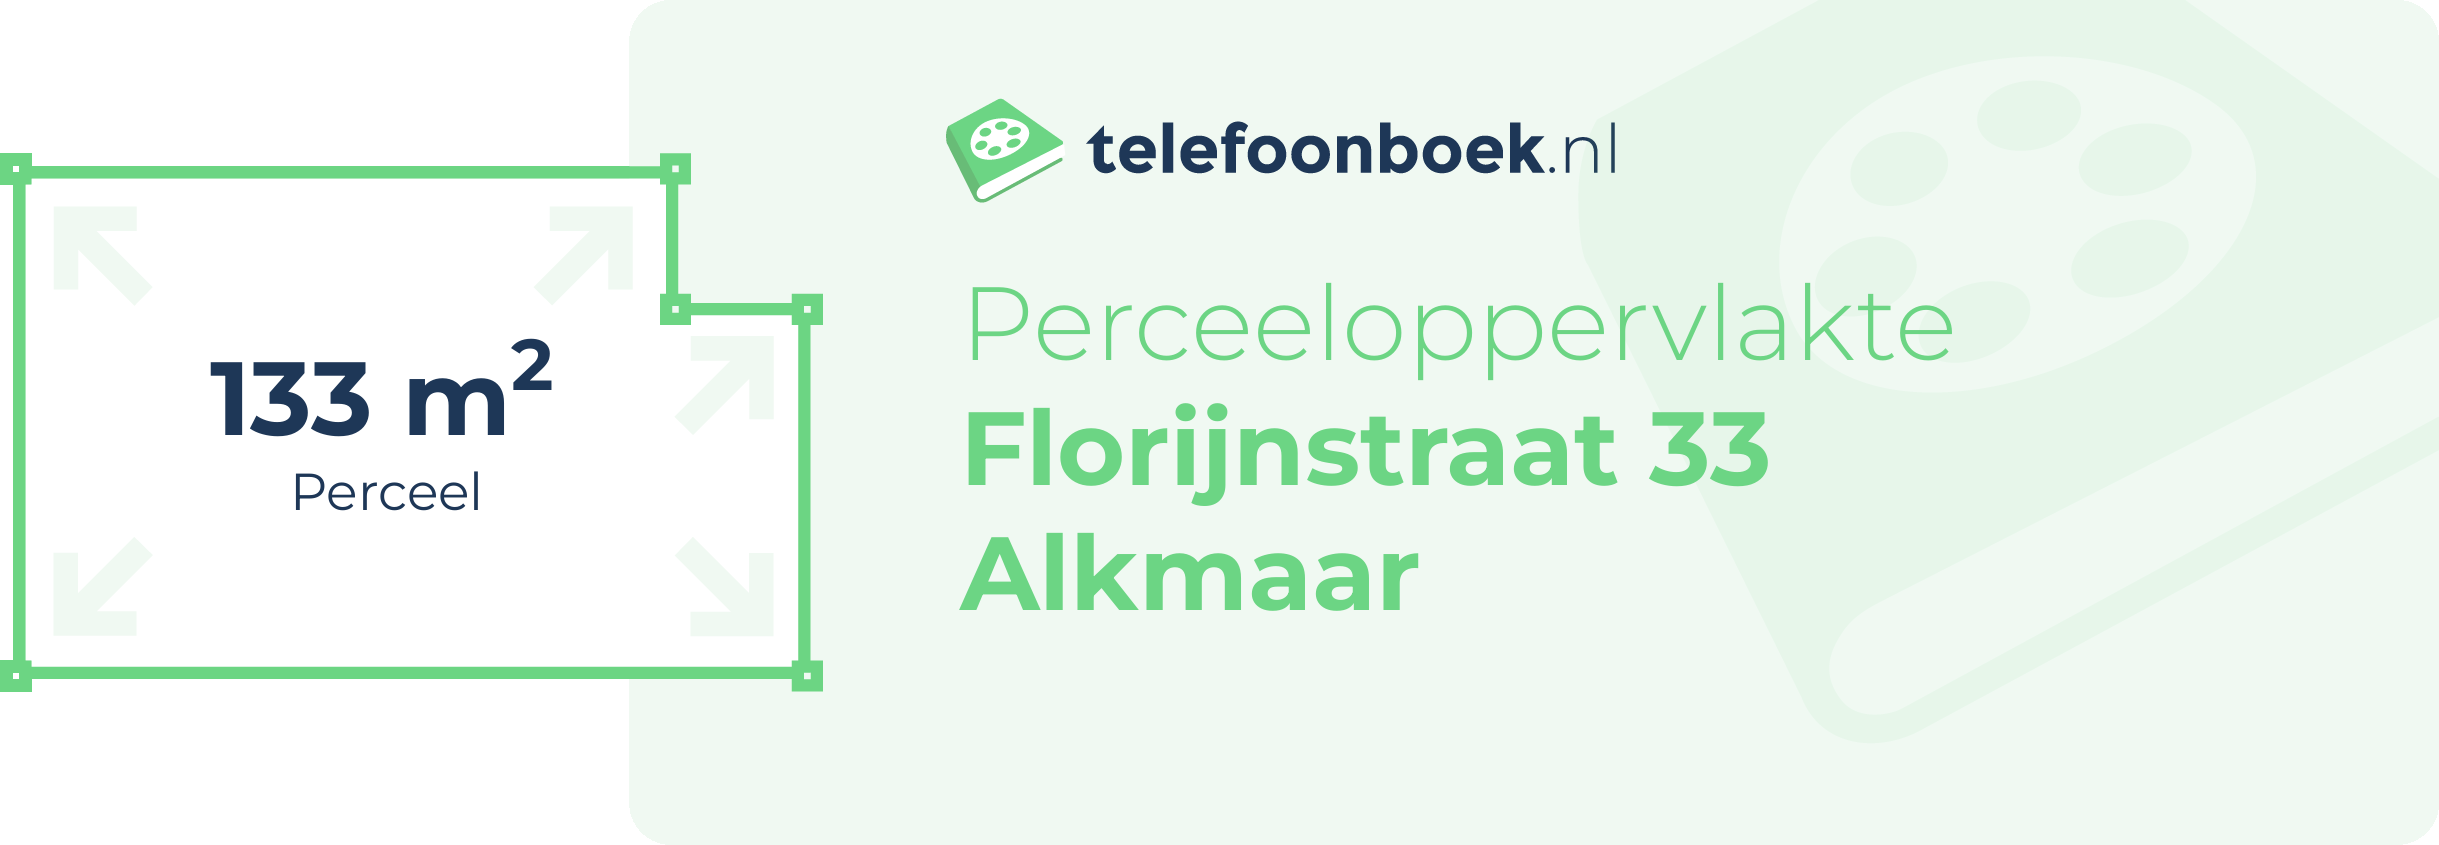 Perceeloppervlakte Florijnstraat 33 Alkmaar